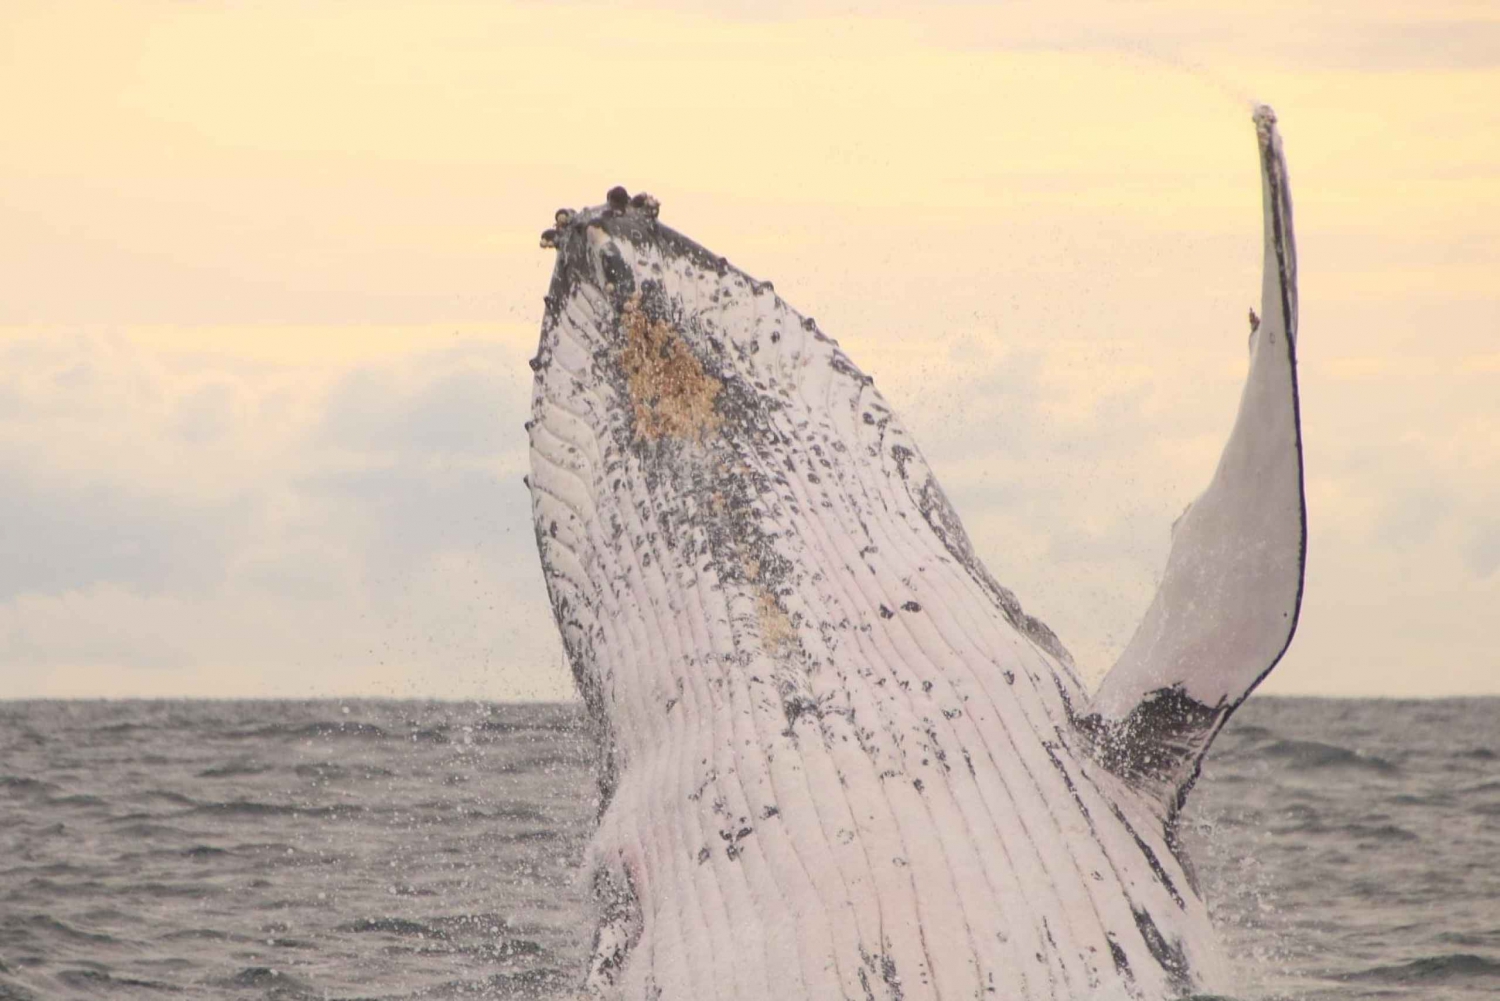 Safari de avistamiento de ballenas en Byron Bay